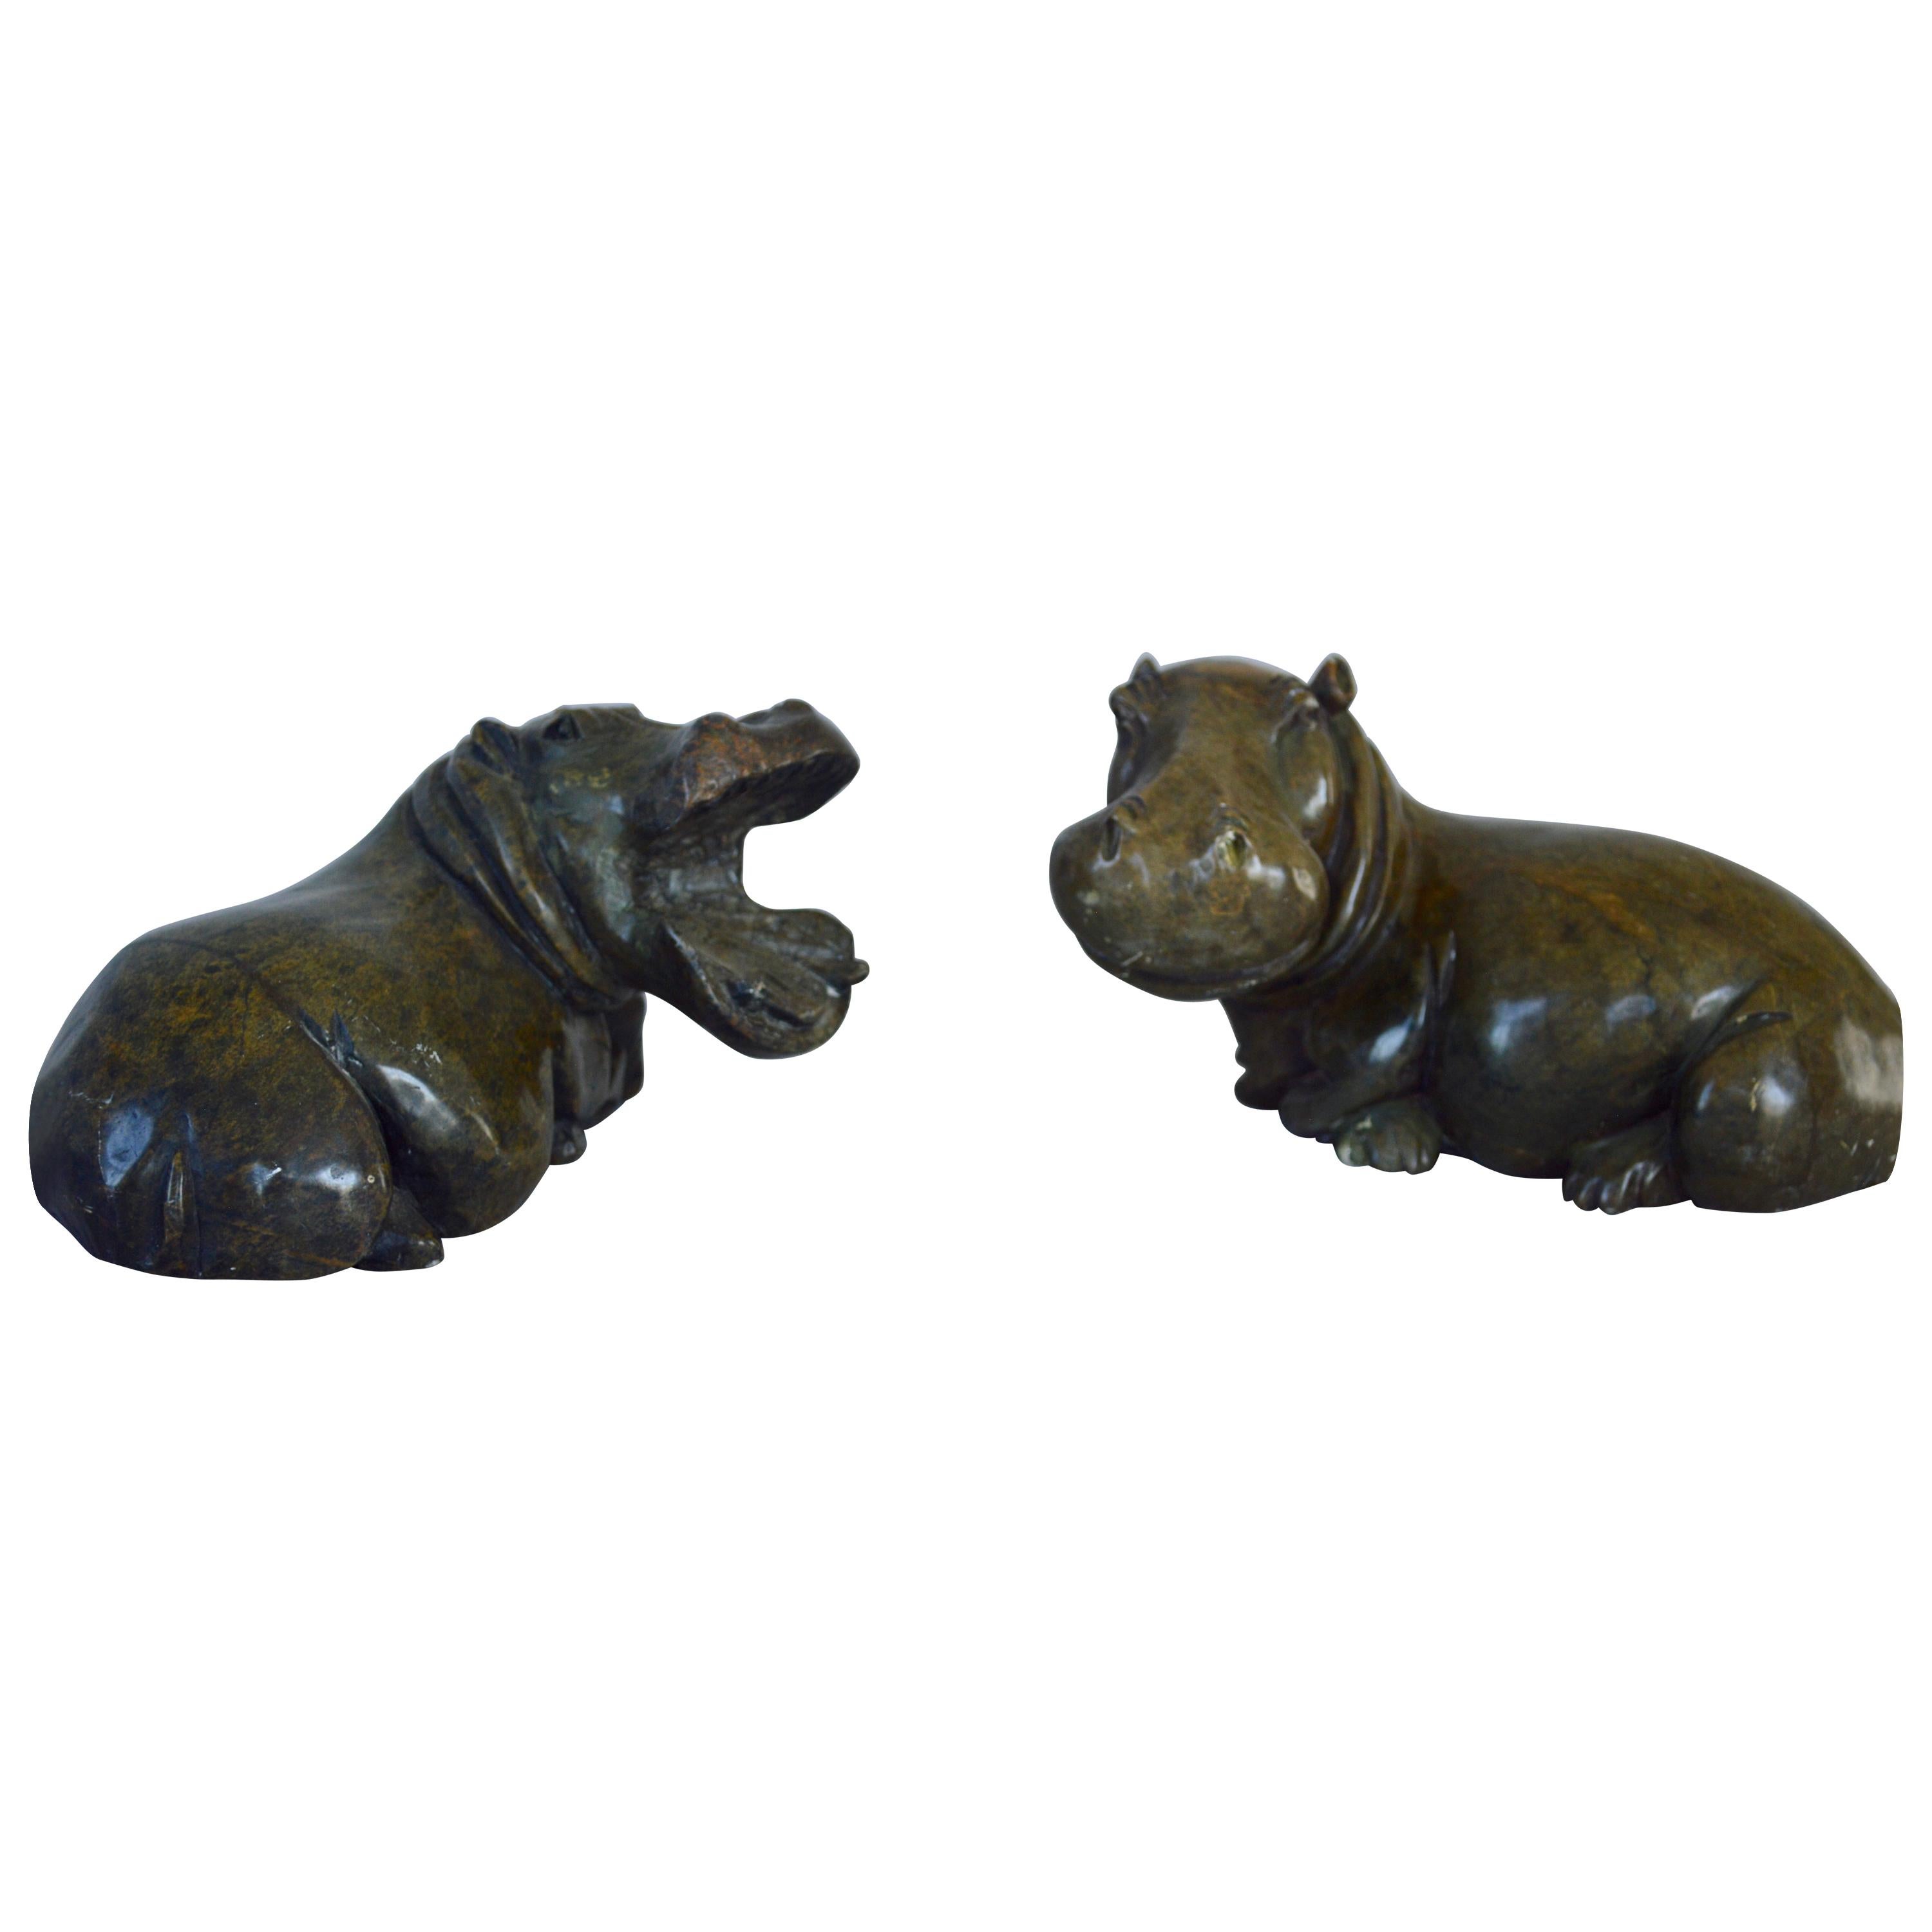 Midcentury Pair of Hippopotamus Sculptures